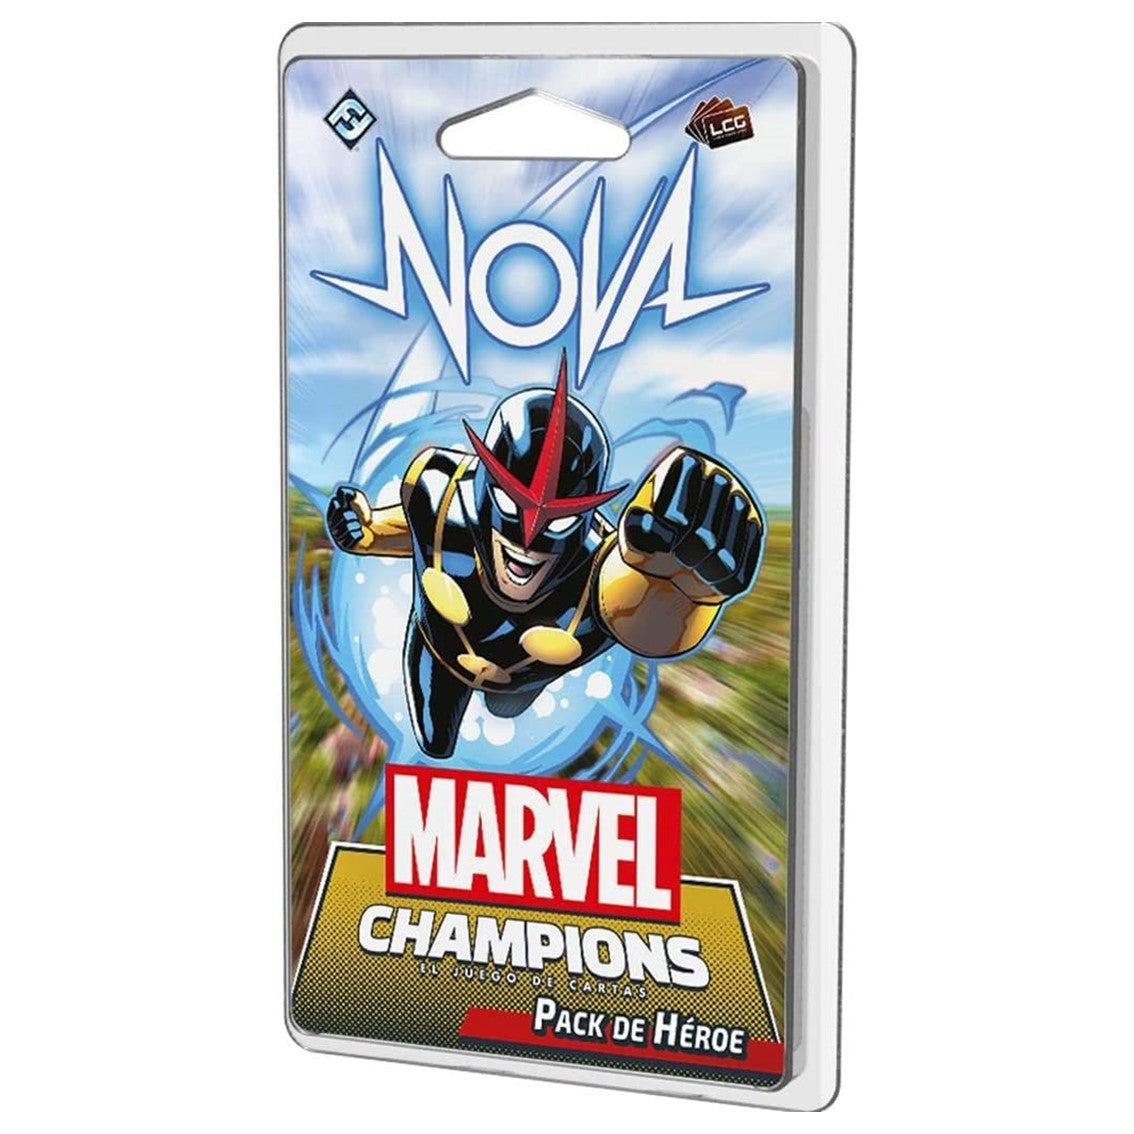 Juego de mesa Marvel Champions: Nova (pack de héroe)